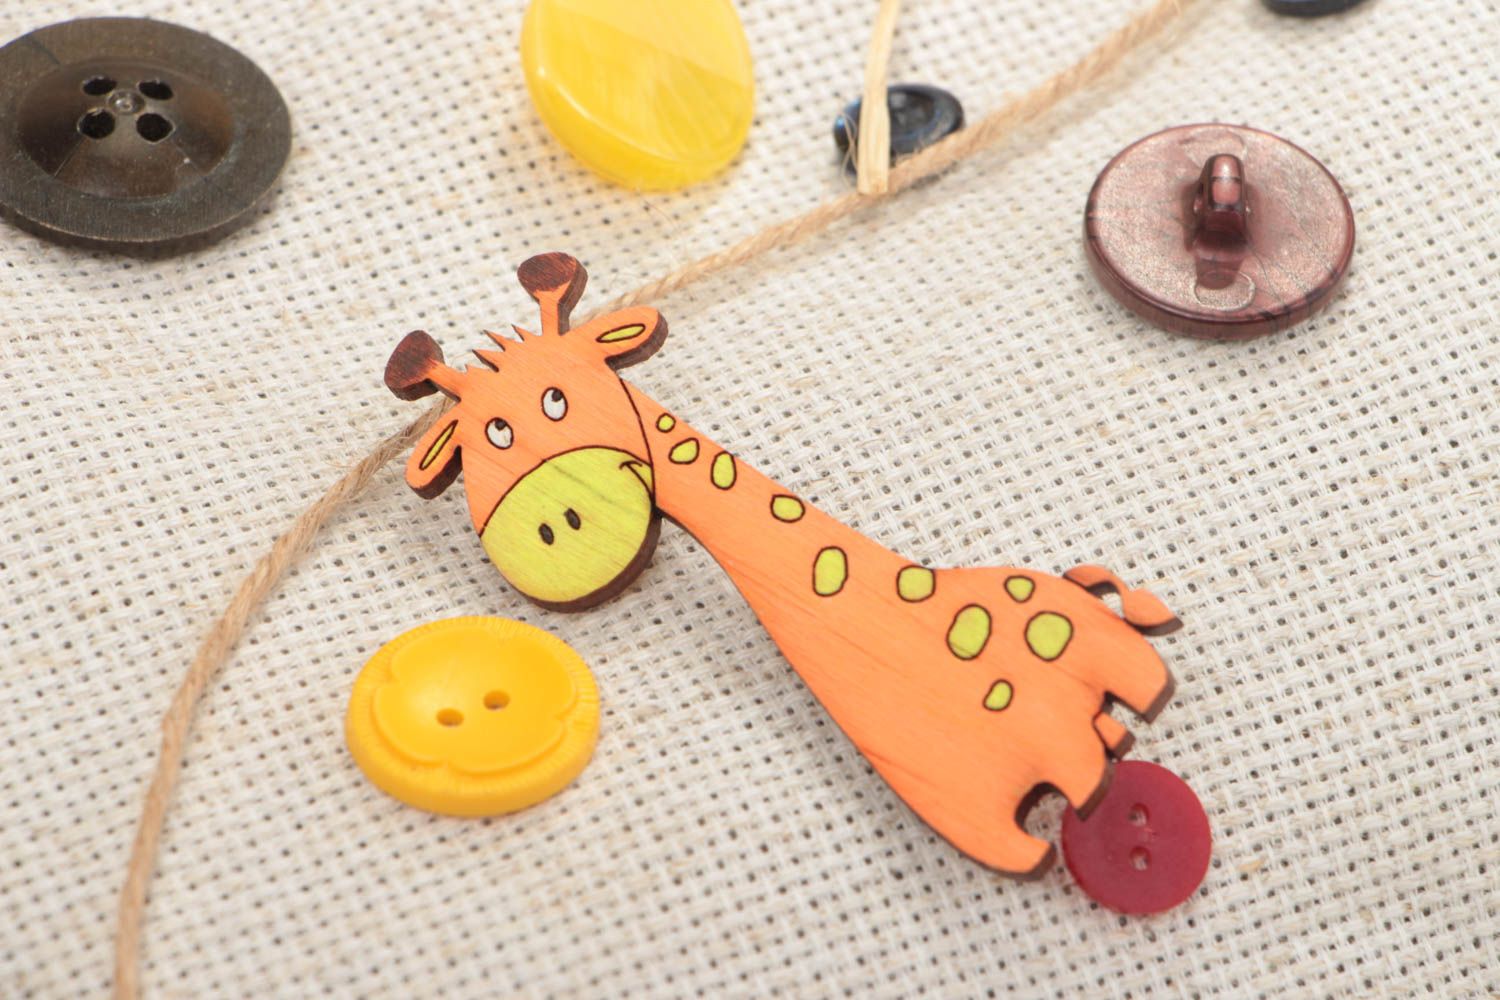 Фанерная брошь расписанная акриловыми красками в виде яркого жирафа хэнд мэйд фото 1